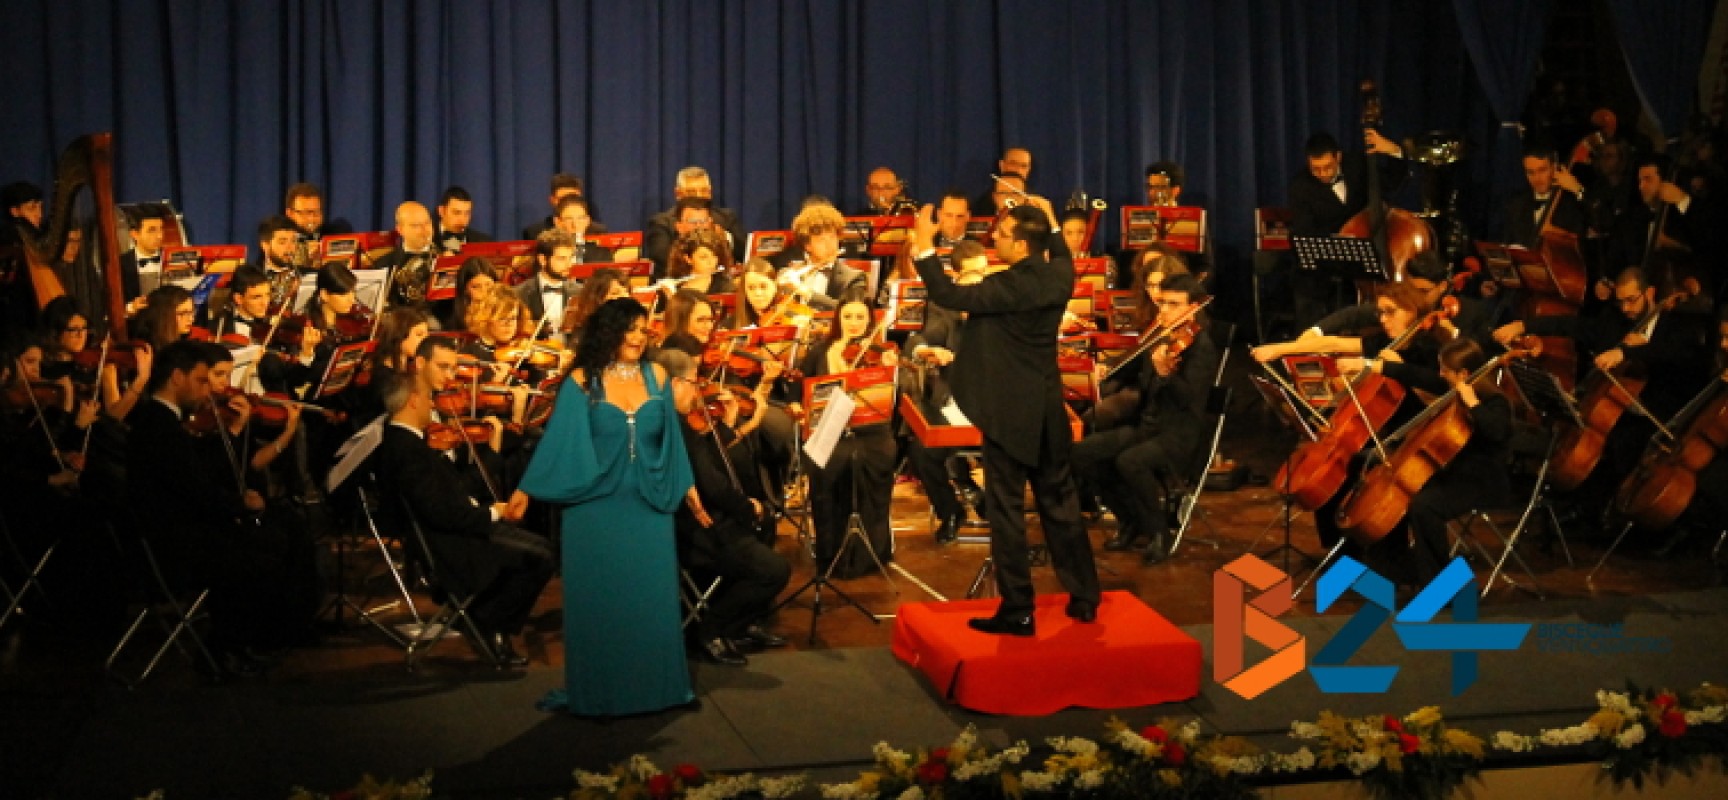 L’orchestra “Biagio Abbate” convince il pubblico del Politeama. E stasera si replica / FOTO